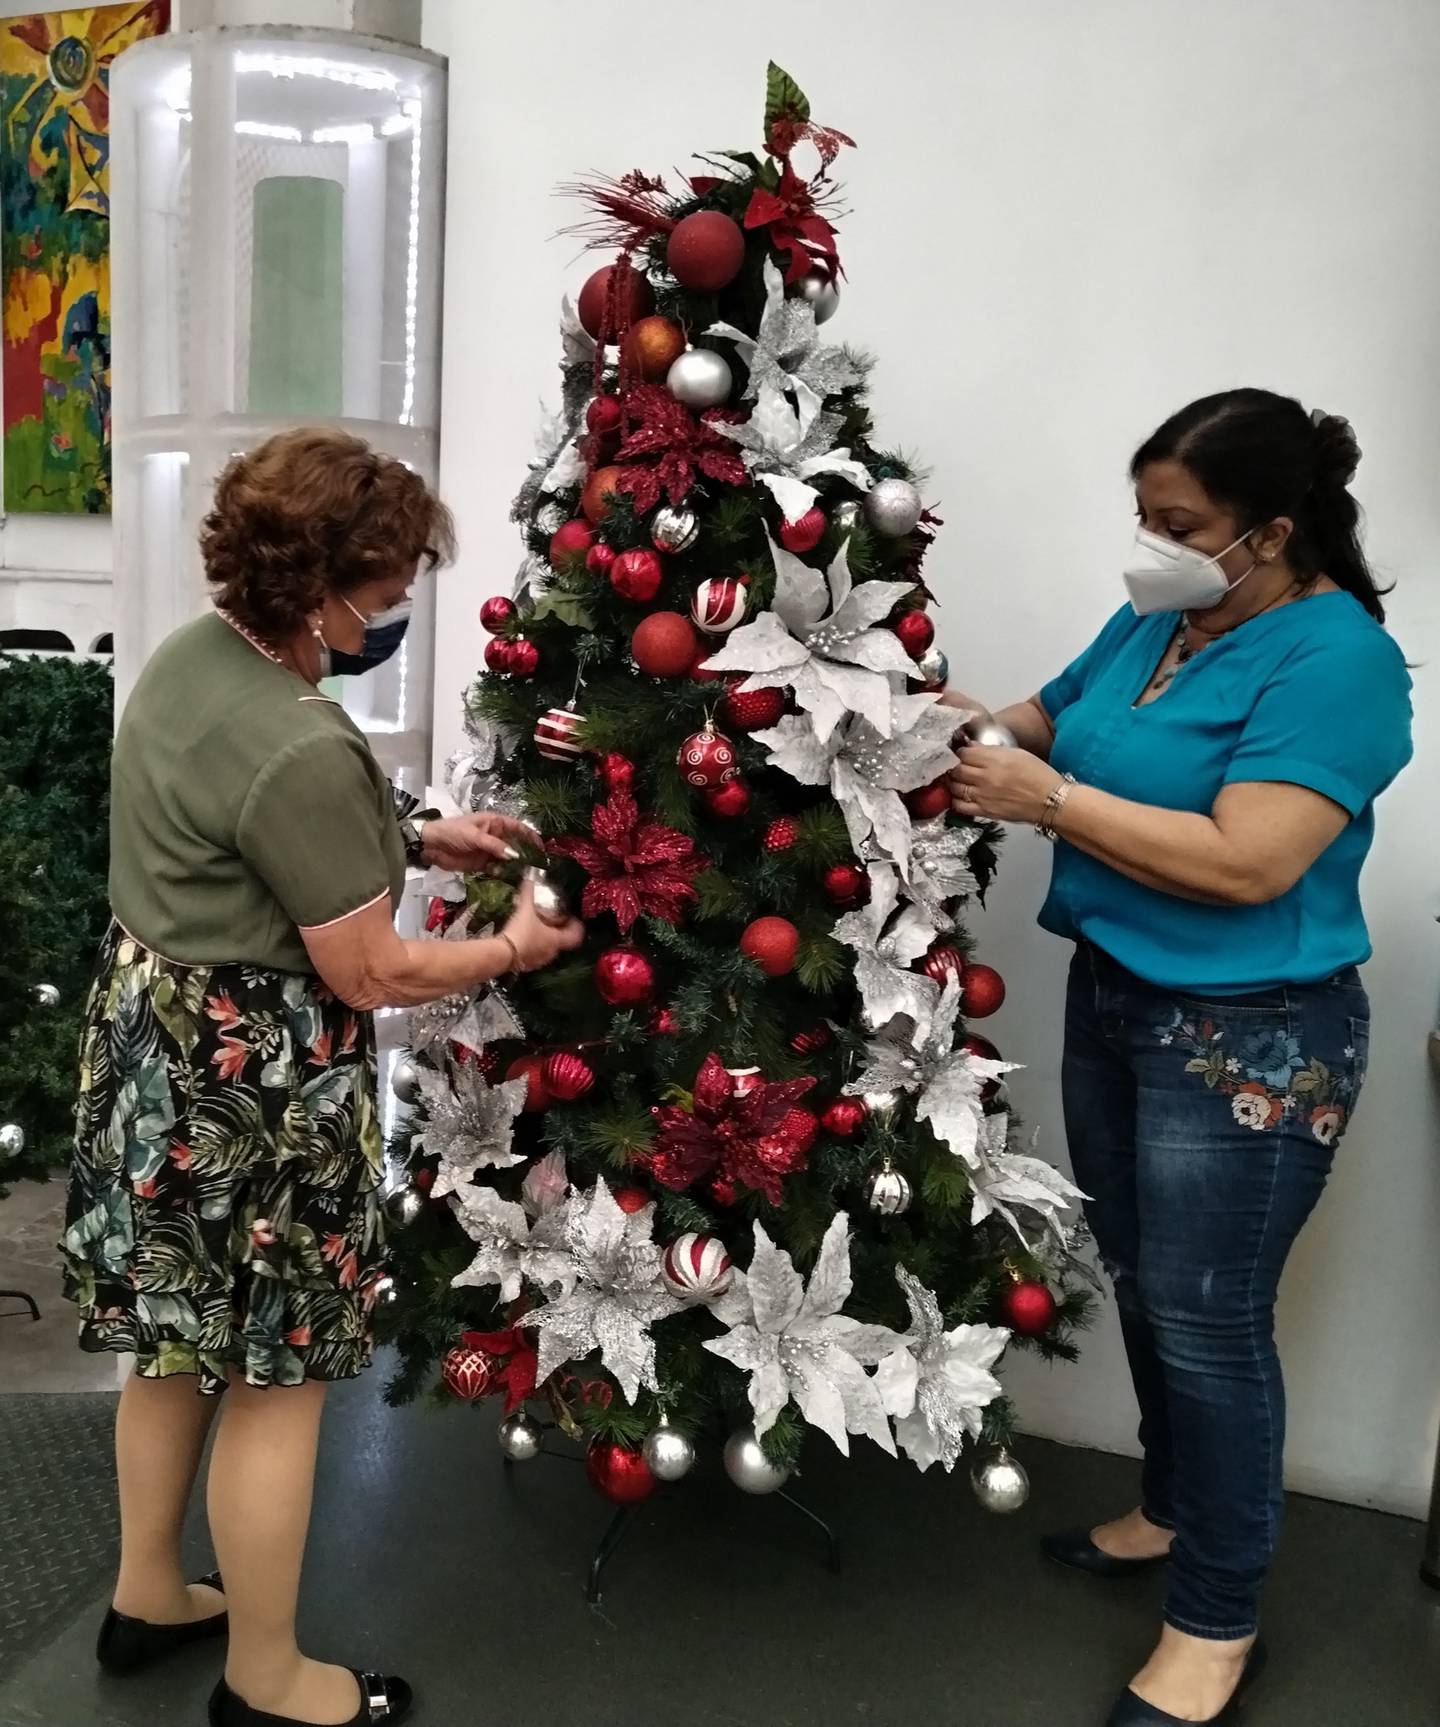 El Hospital Nacional de Niños se llena de color cada navidad gracias a la creatividad e iniciativa de Elsa Castro y Lidieth Chaves, las cuales se hacen cargo de la decoración navideña del centro pediátrico de manera voluntaria.